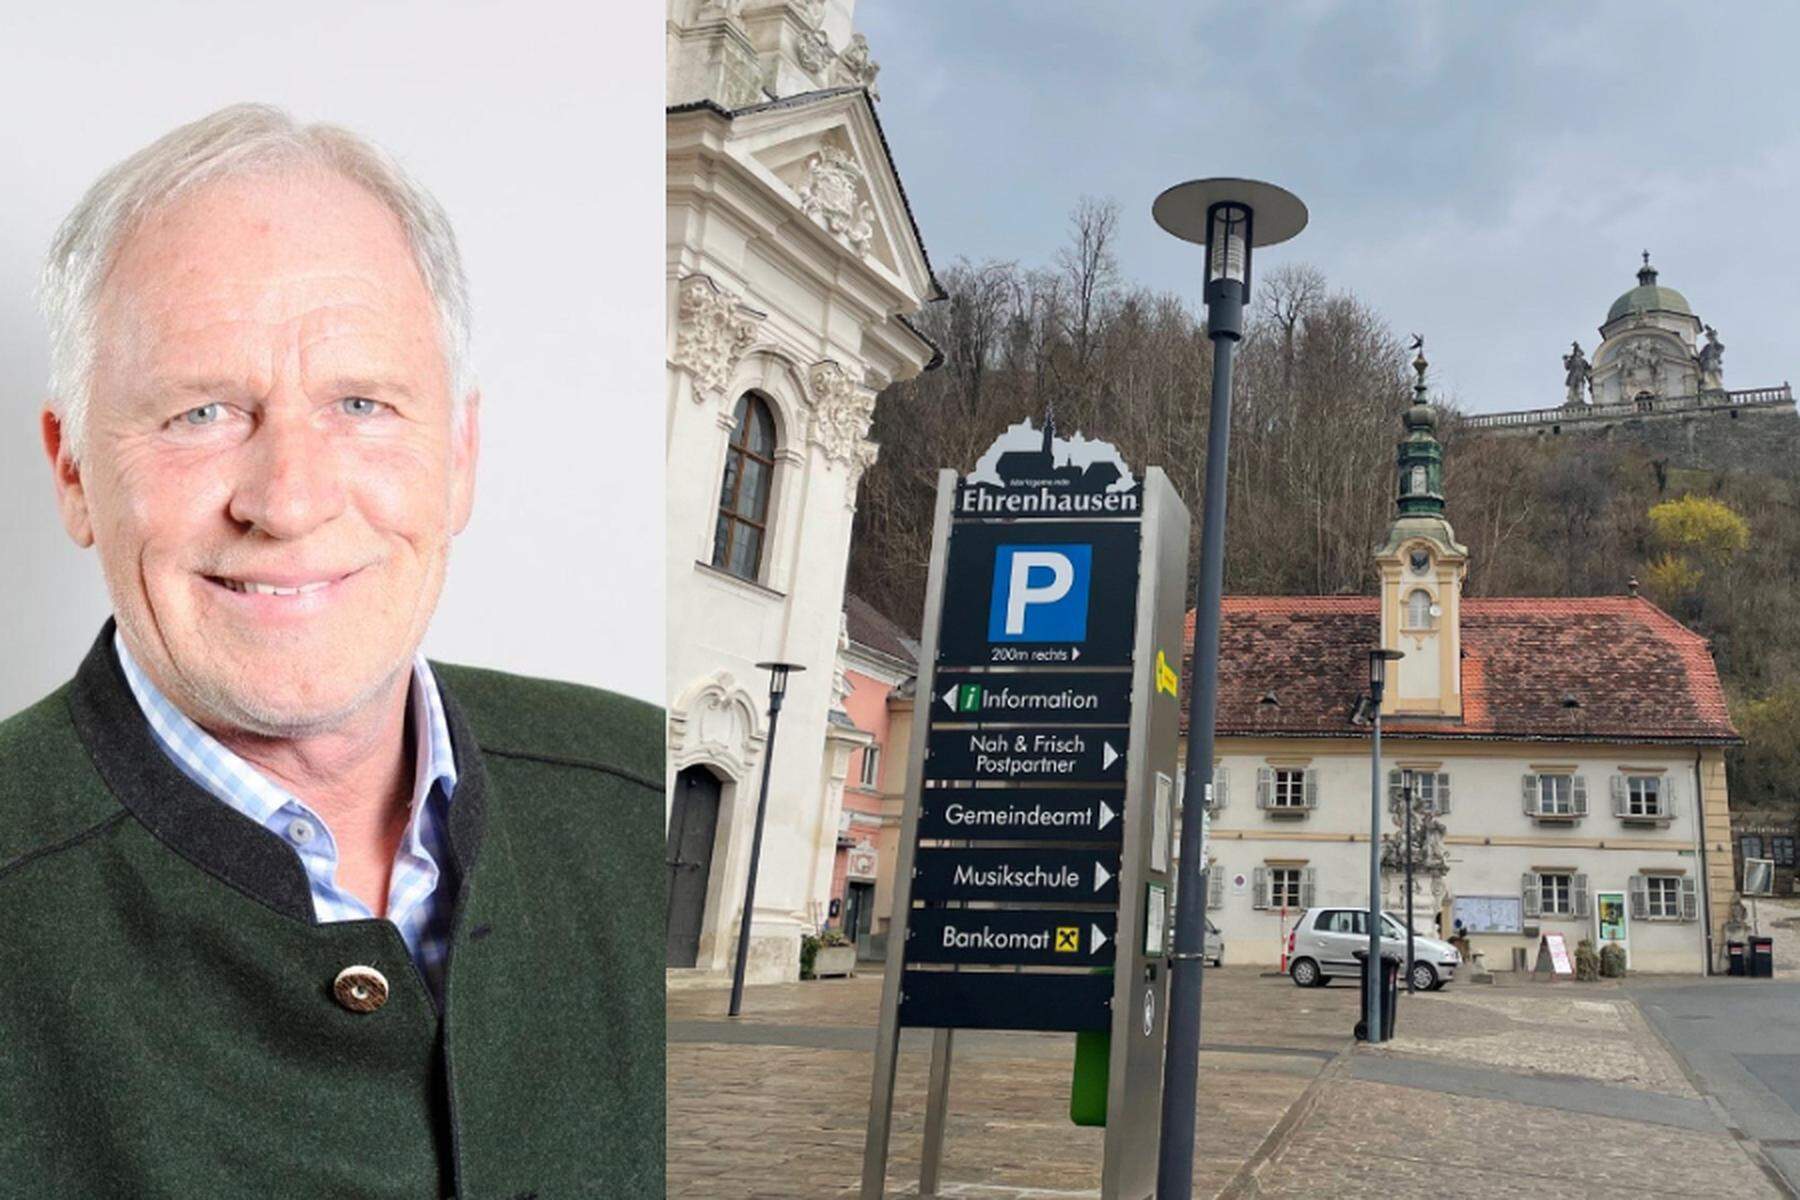 Ehrenhausen: Bürgermeister-Partei ÖVP verliert Mehrheit im Gemeinderat